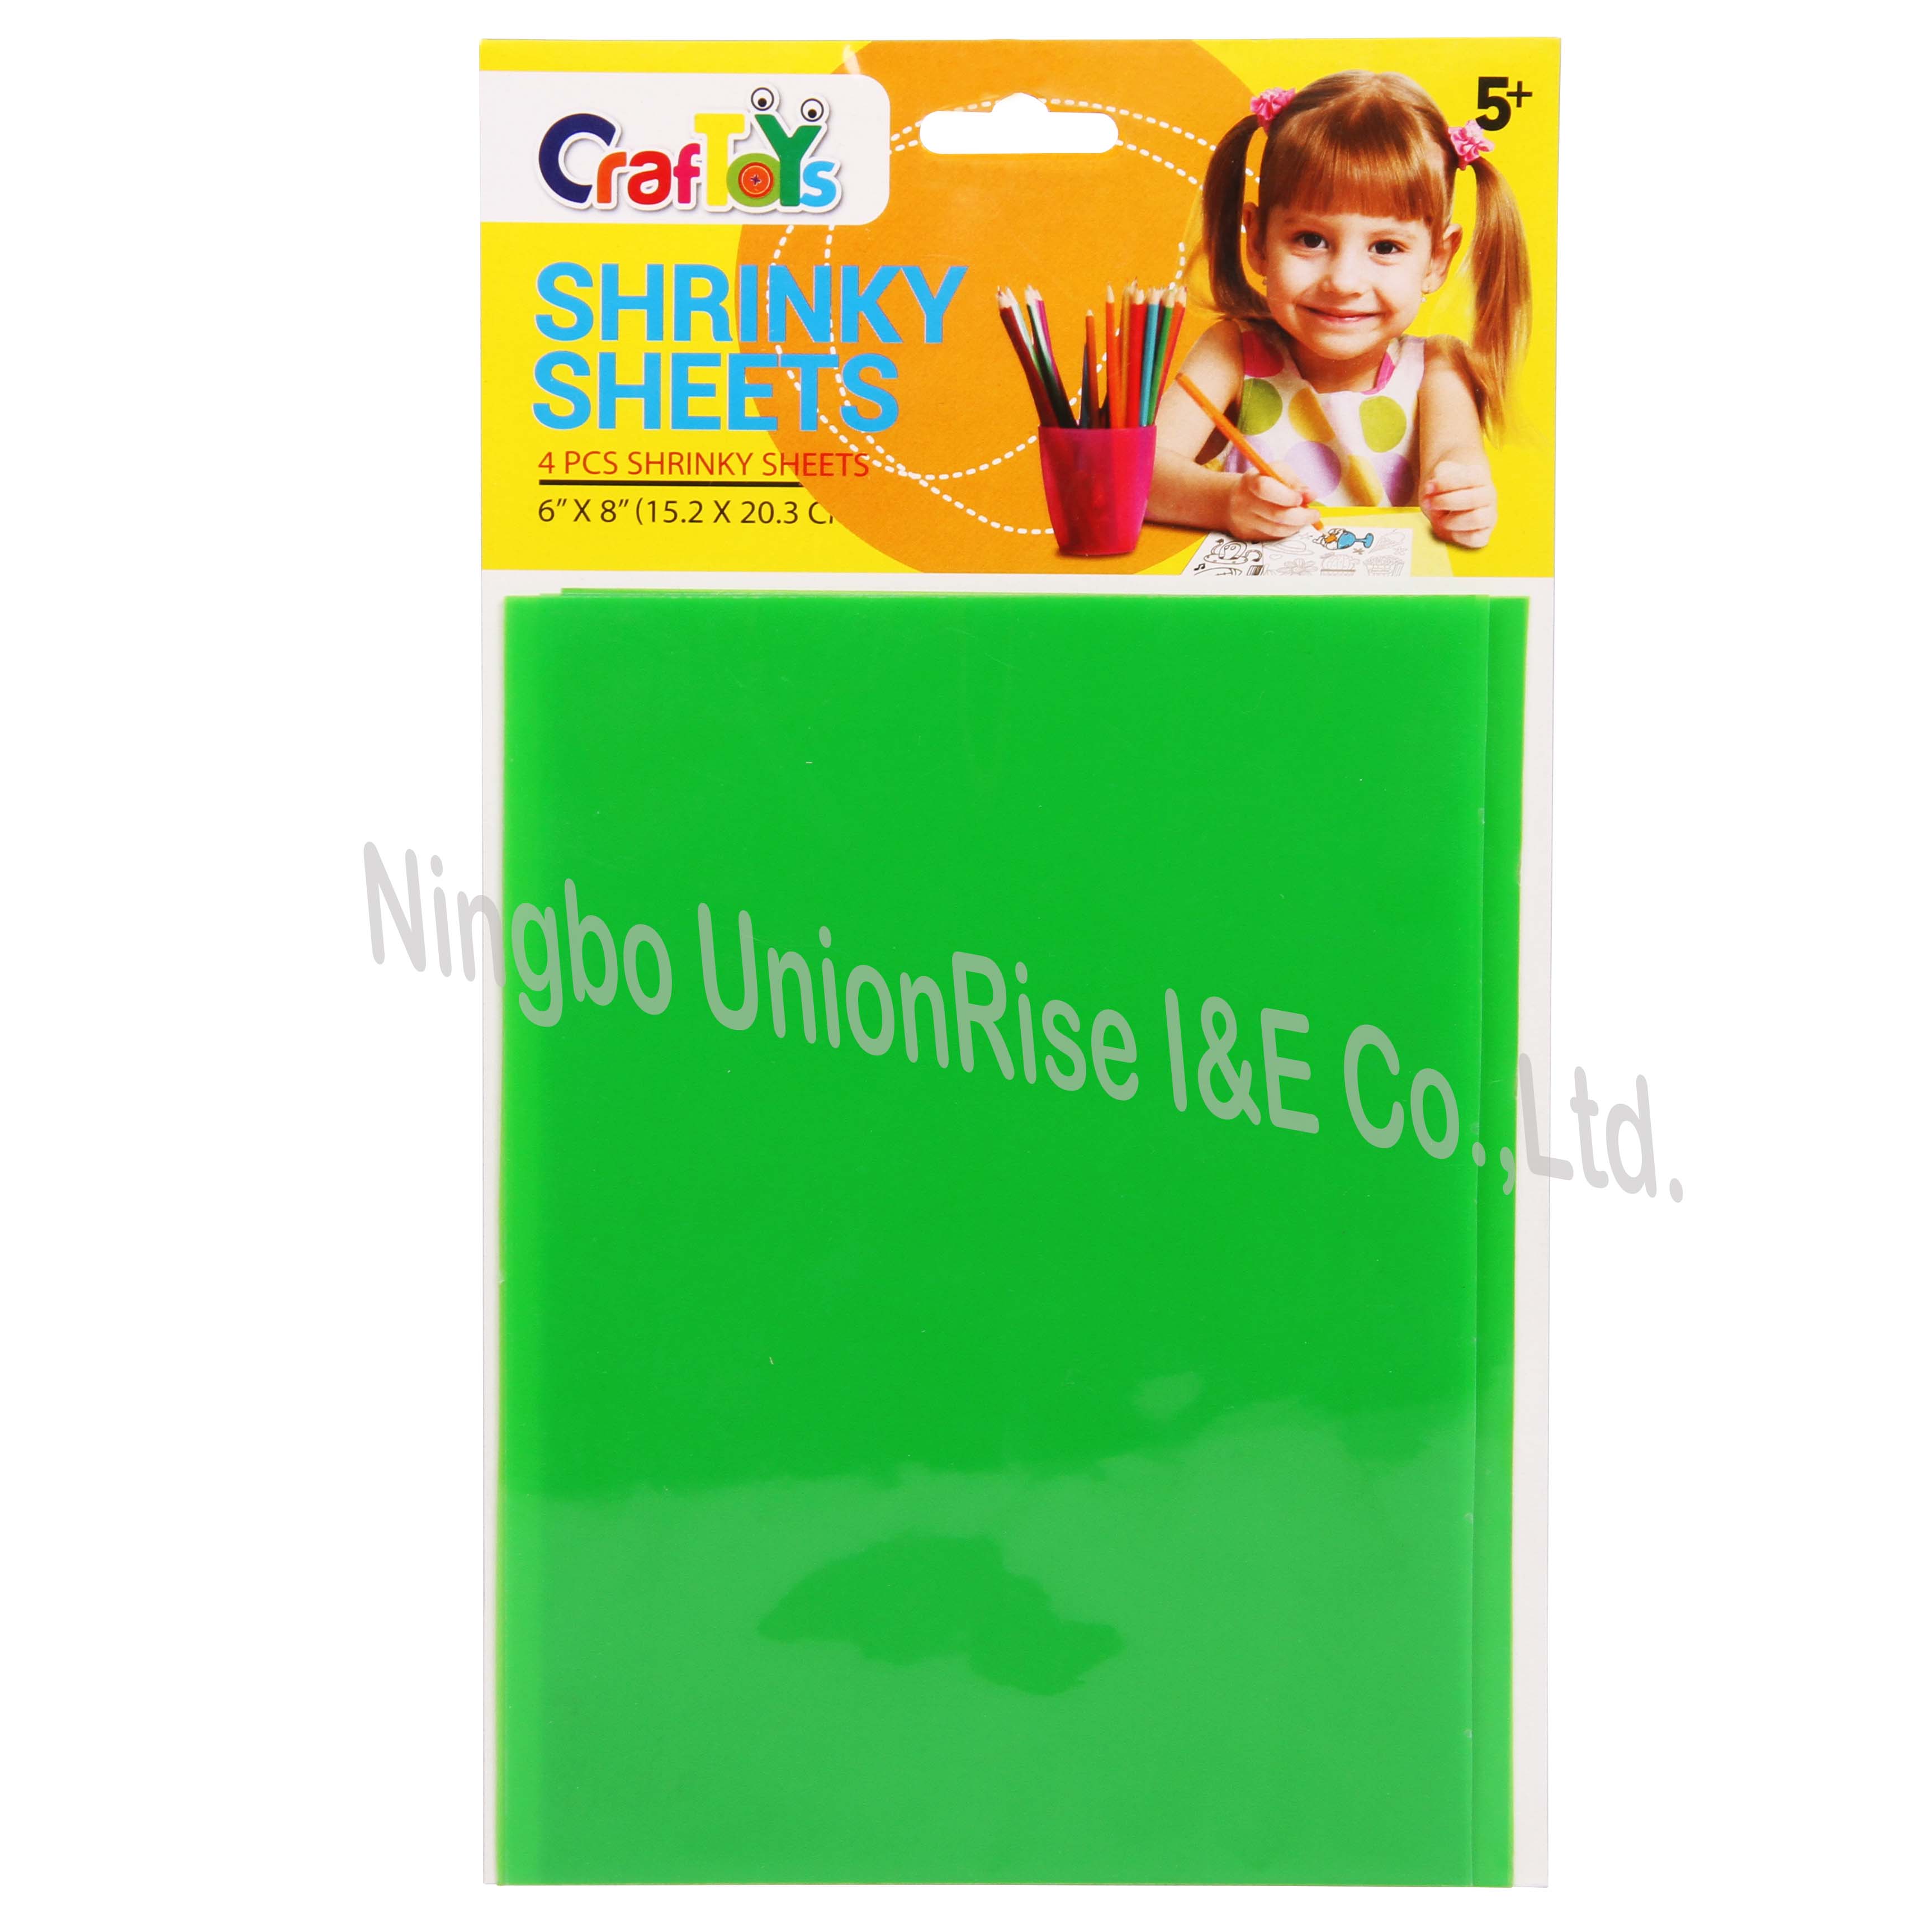 Unionrise Wholesale shrink art kit company for children-2